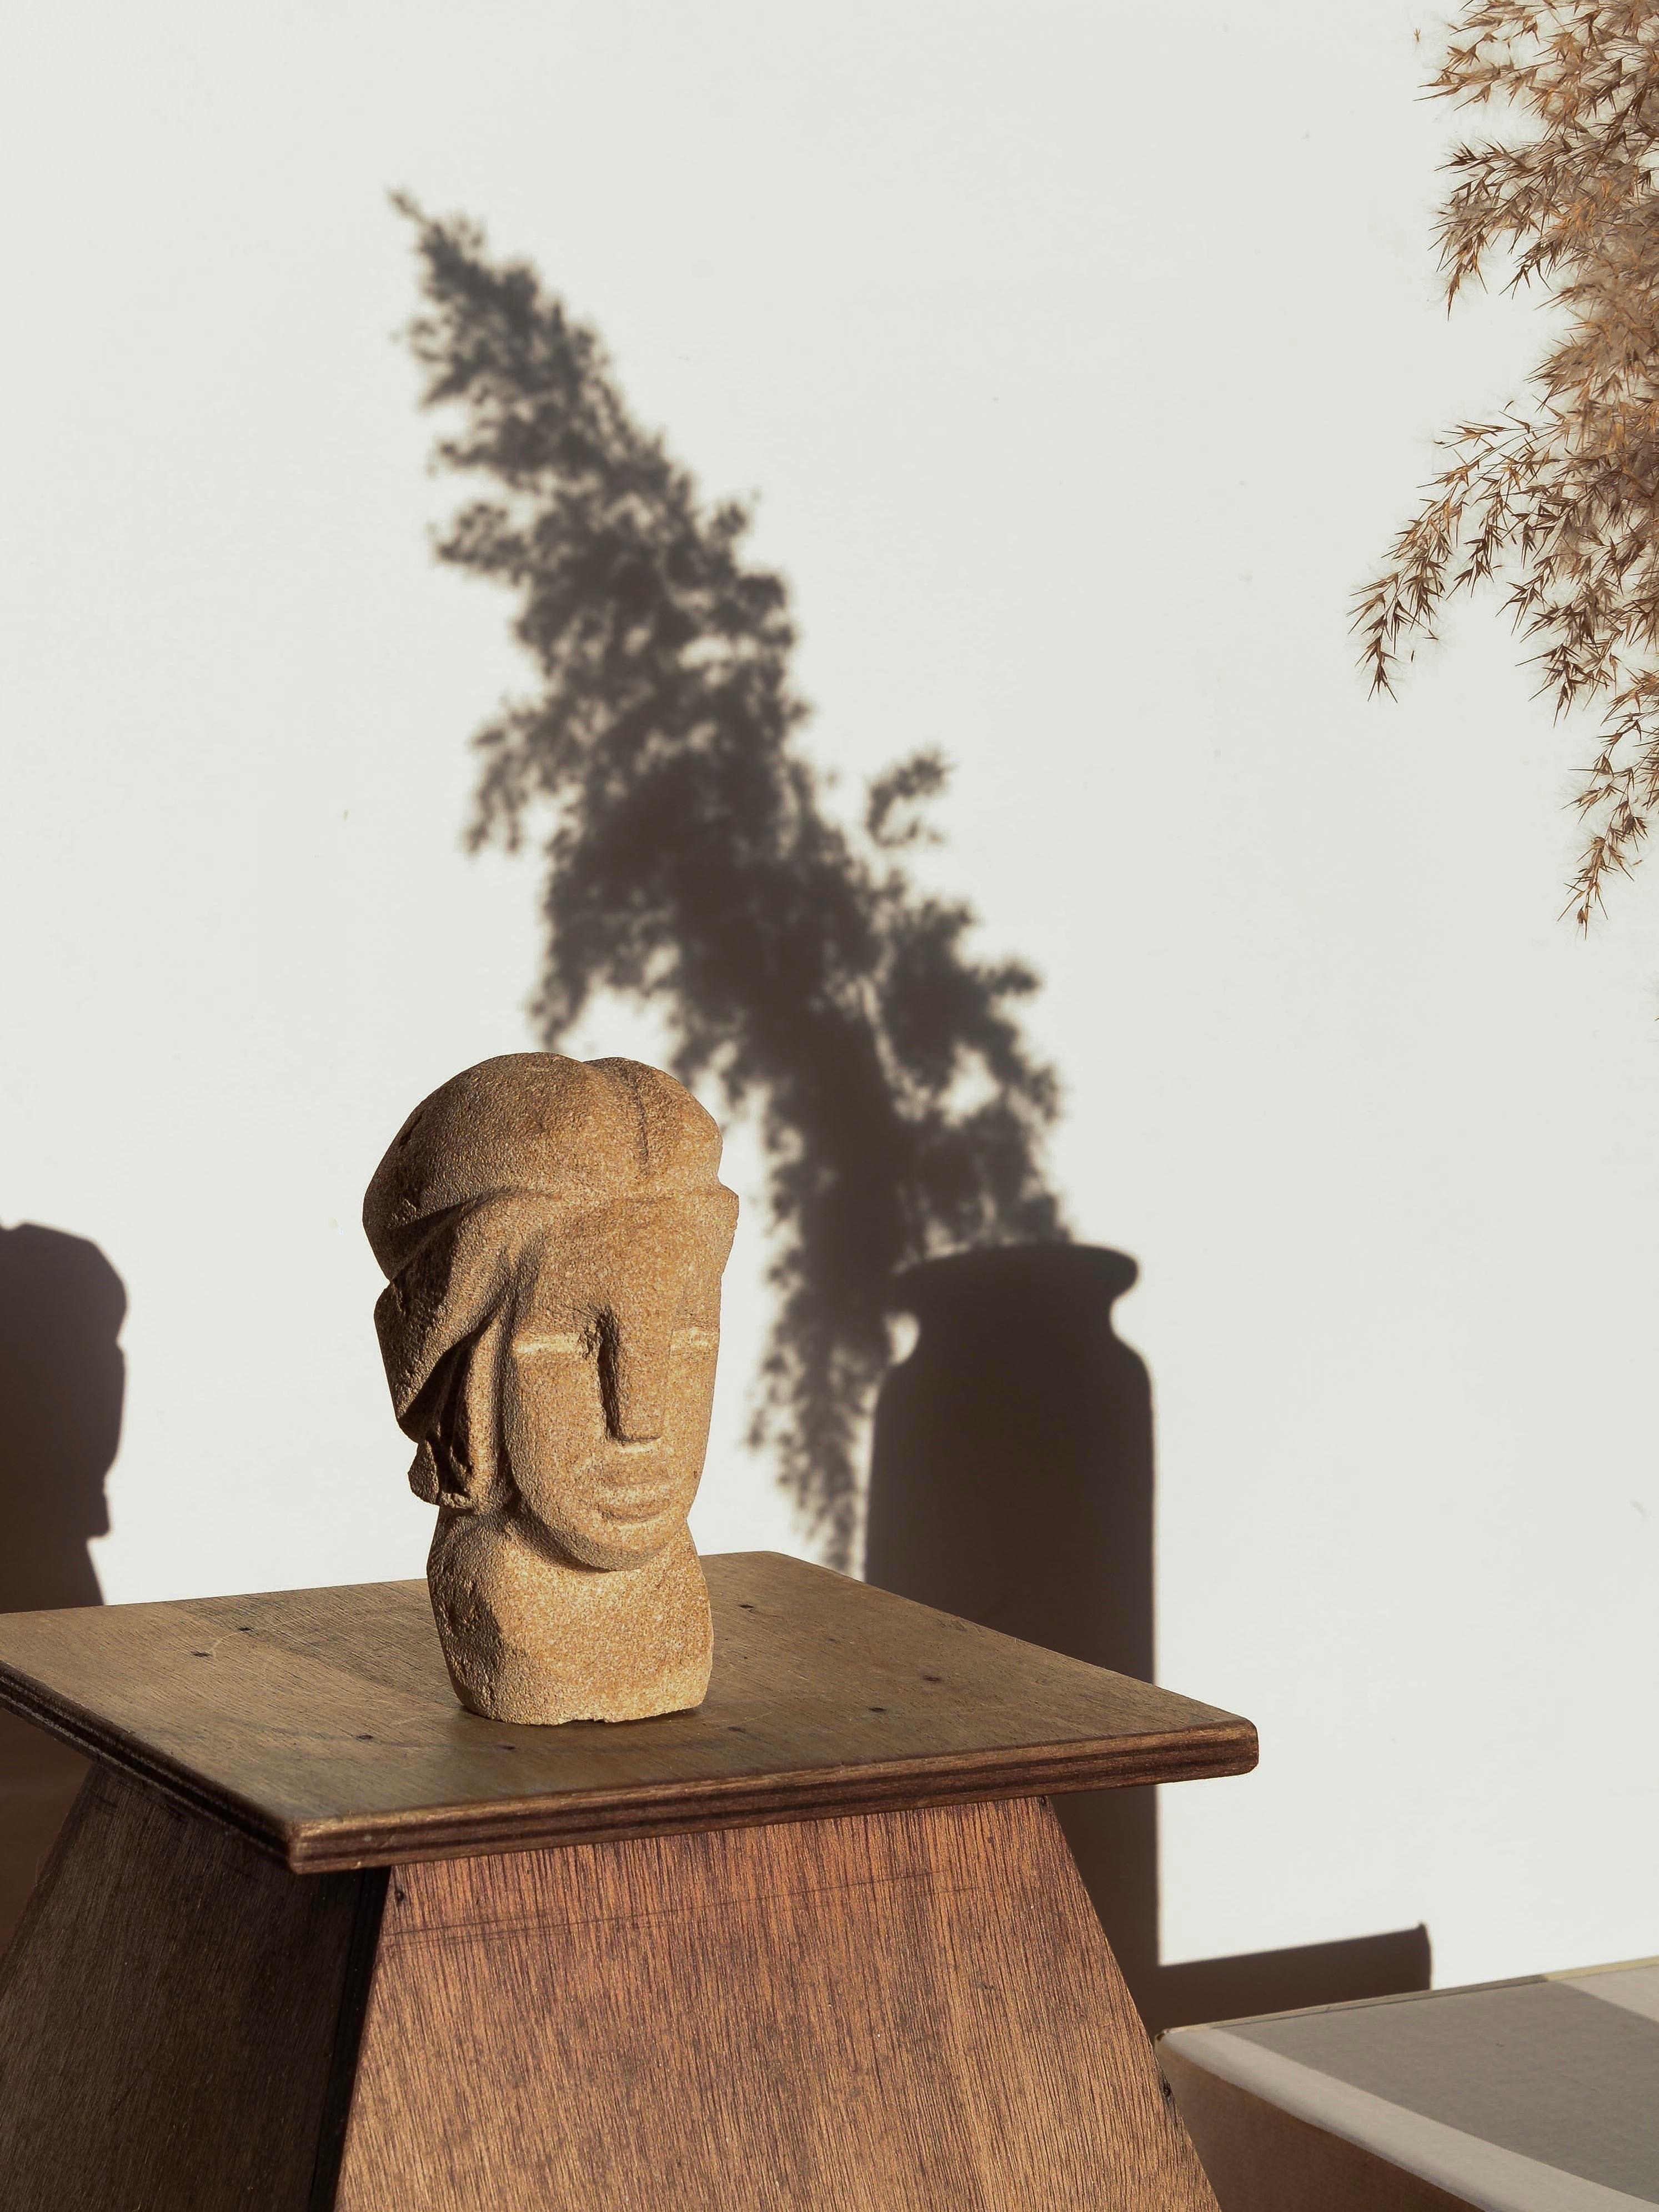 Sculpture en pierre calcaire d'un visage énigmatique et très élégant, sculptée de manière complexe, France, Circa 1970. Les traits du visage, d'apparence masculine, émergent de la pierre par des lignes taillées de manière plutôt graphique et